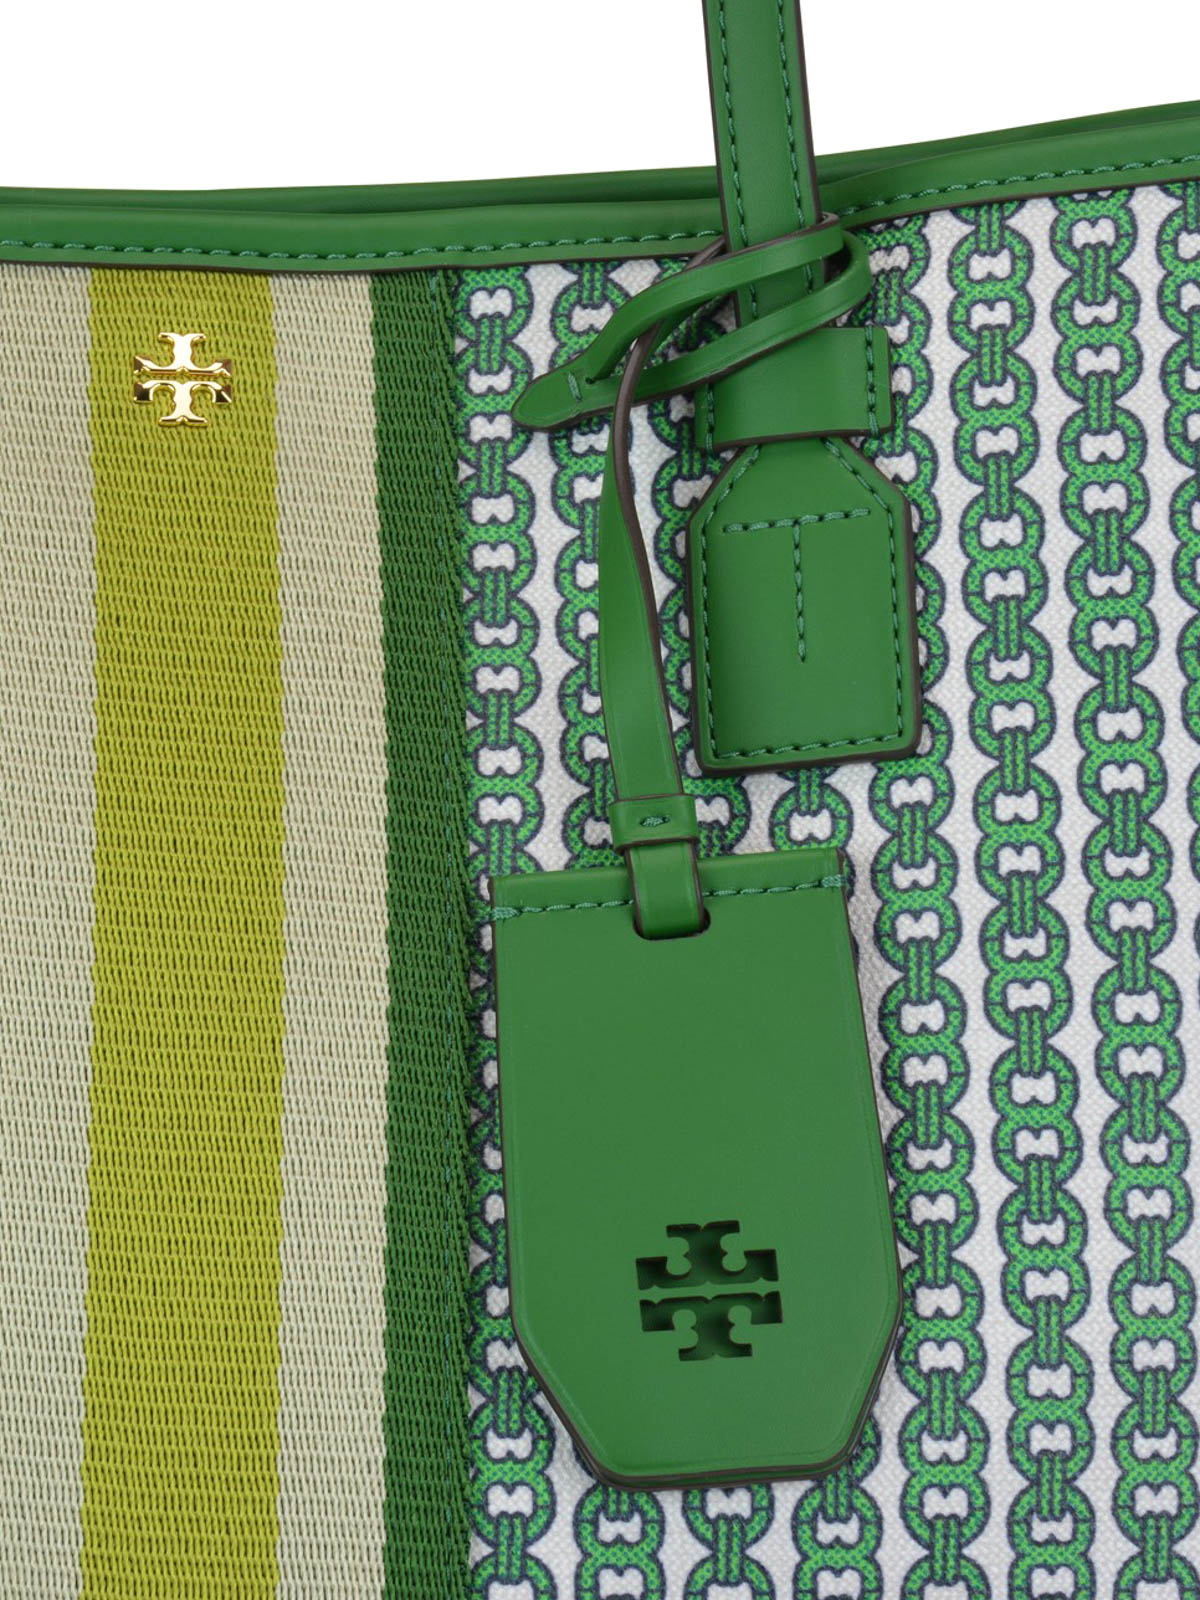 Totes bags Tory Burch - Gemini Link green patterned tote bag - 53303362